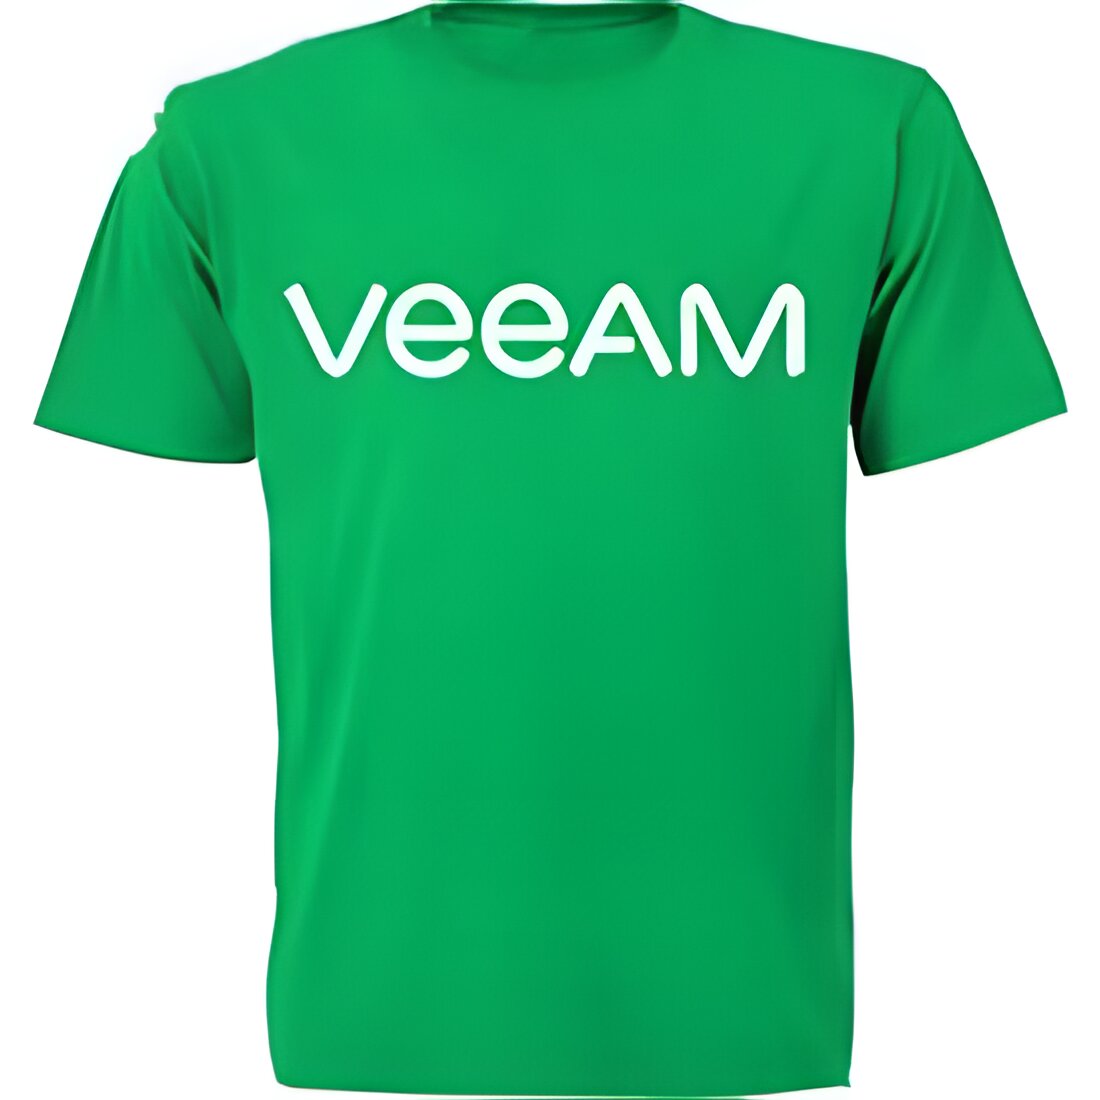 Free Veeam T-Shirt